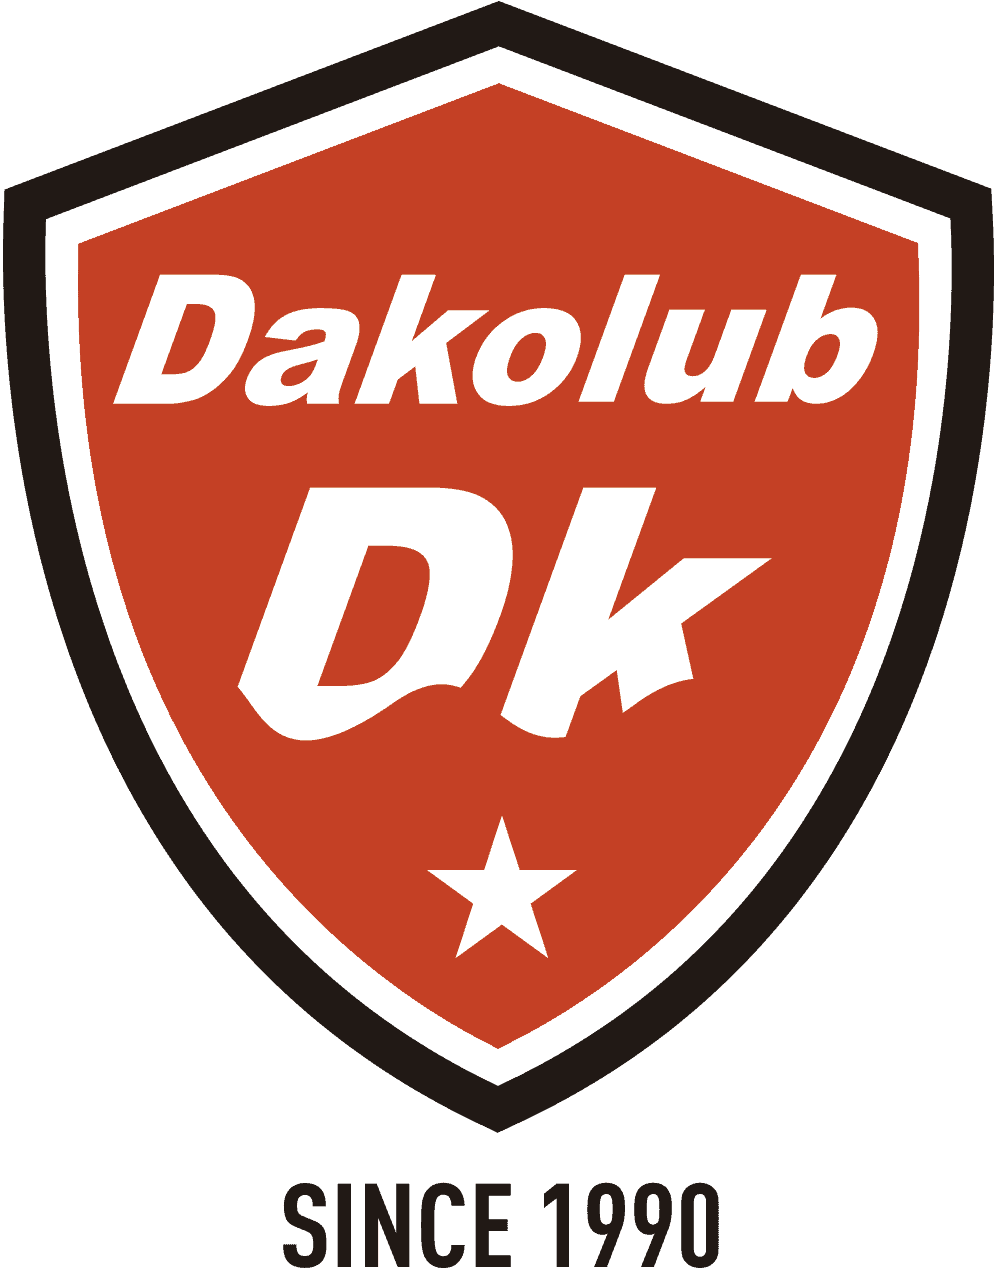 Engrasar la cadena de la moto: los mejores lubricantes - DAKOLUB